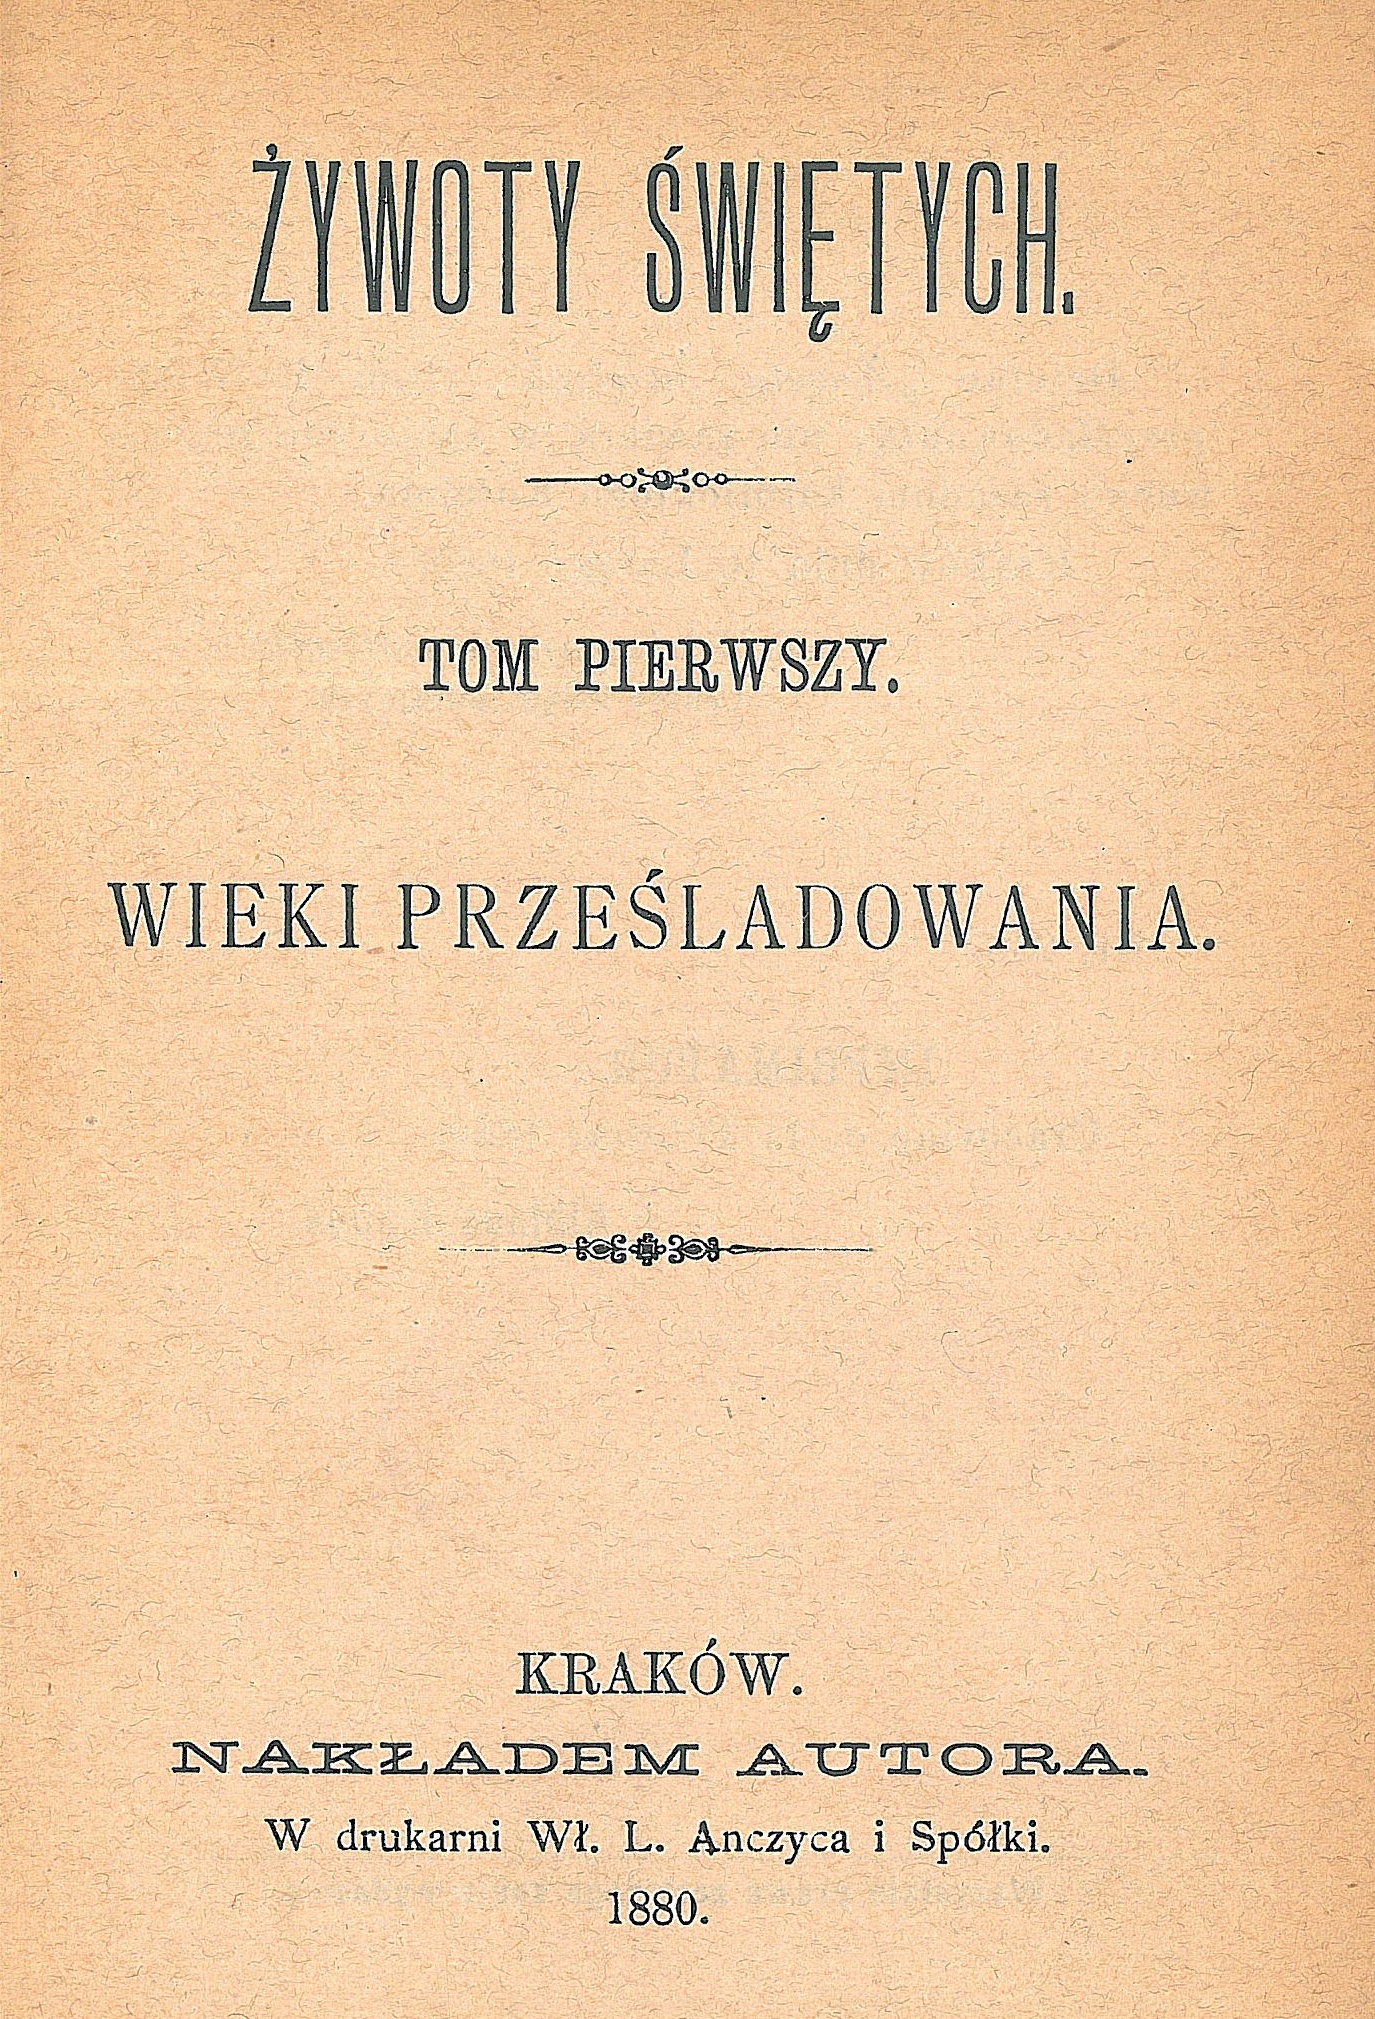 Ks. Wadysaw Wierciszewski, ywoty witych. Tom pierwszy. Wieki przeladowania. Kraków. NAKADEM AUTORA. W drukarni W. L. Anczyca i Spóki. 1880.